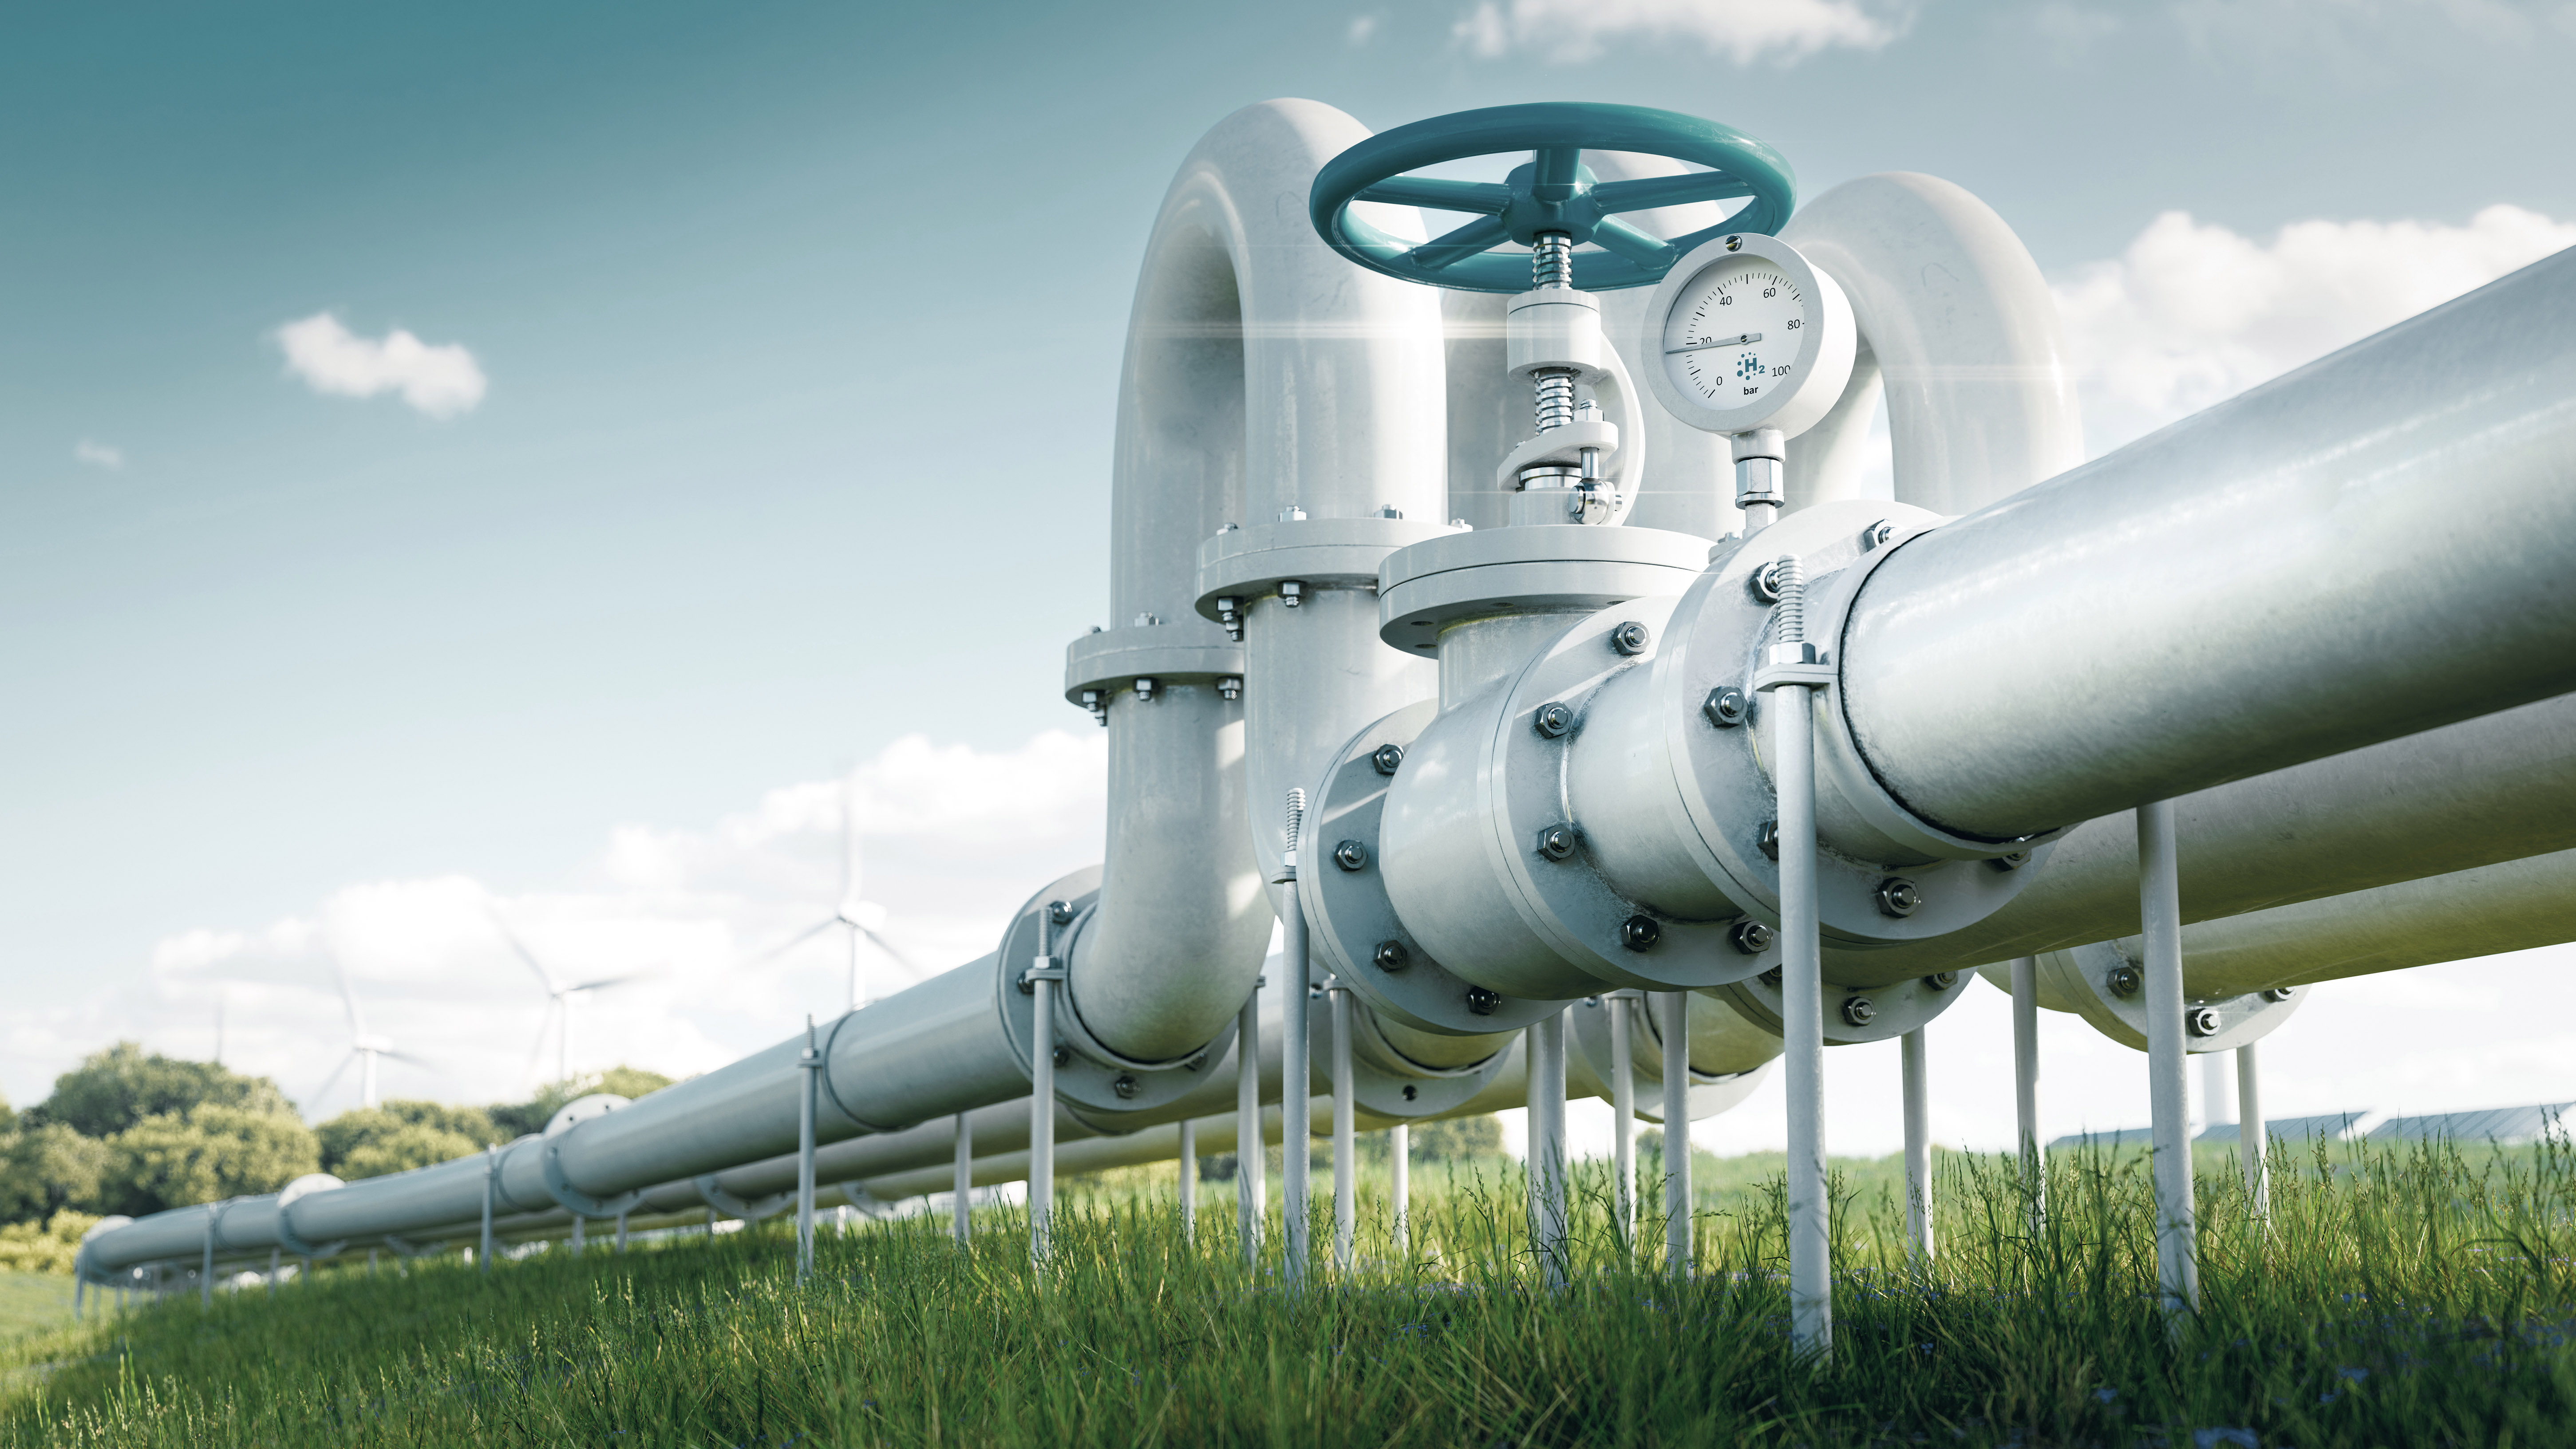 Vorwiegend bestehende Erdgasleitungen sollen für die Wasserstoffwirtschaft umgewidmet werden